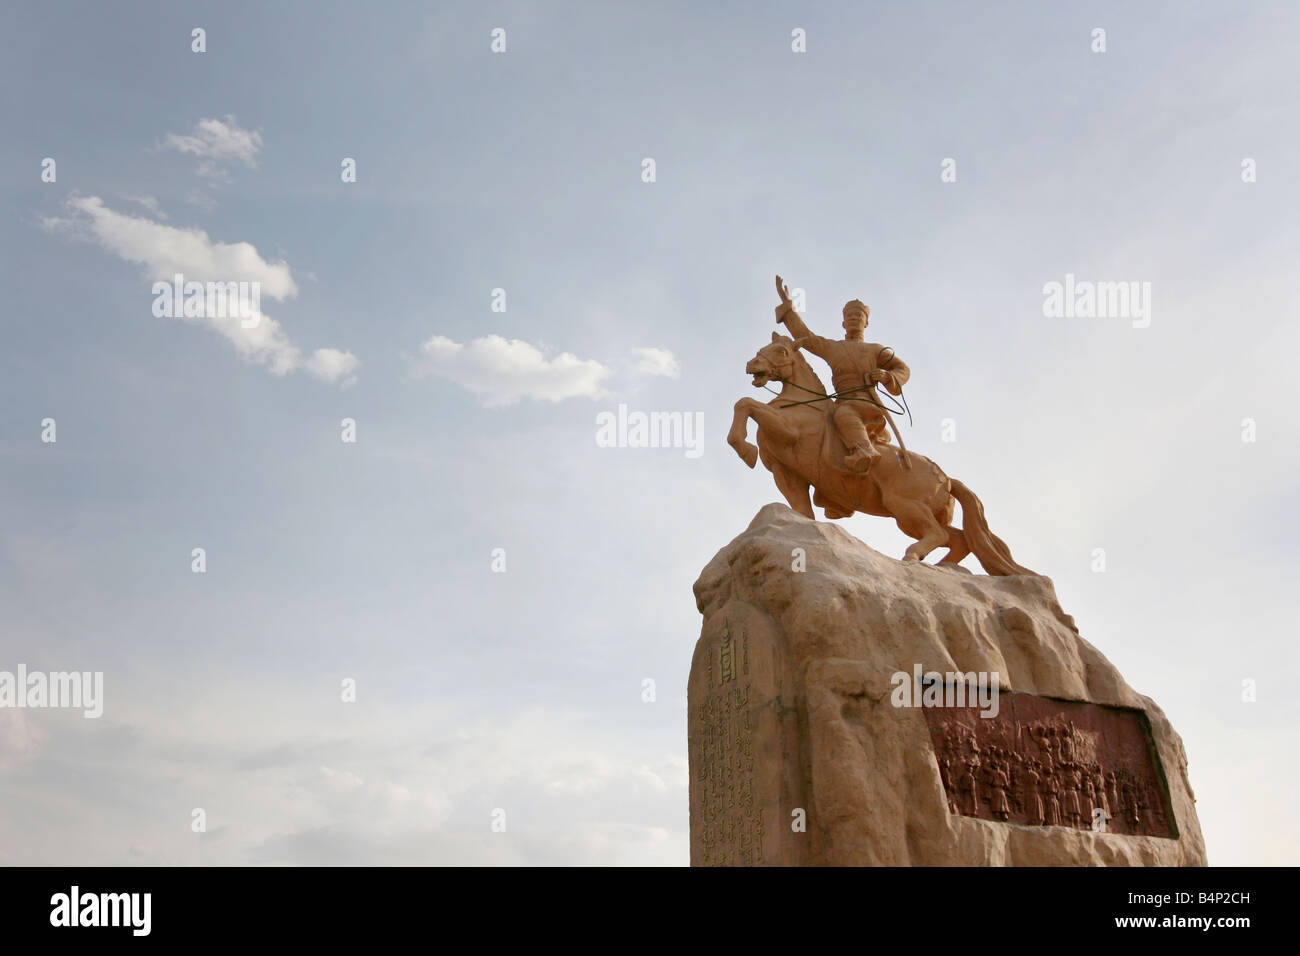 Oulan-bator statue de Damdin Sukhbaatar Roman Fedorovitch von Ungern-Sternberg défait et la Mongolie chinoise Banque D'Images